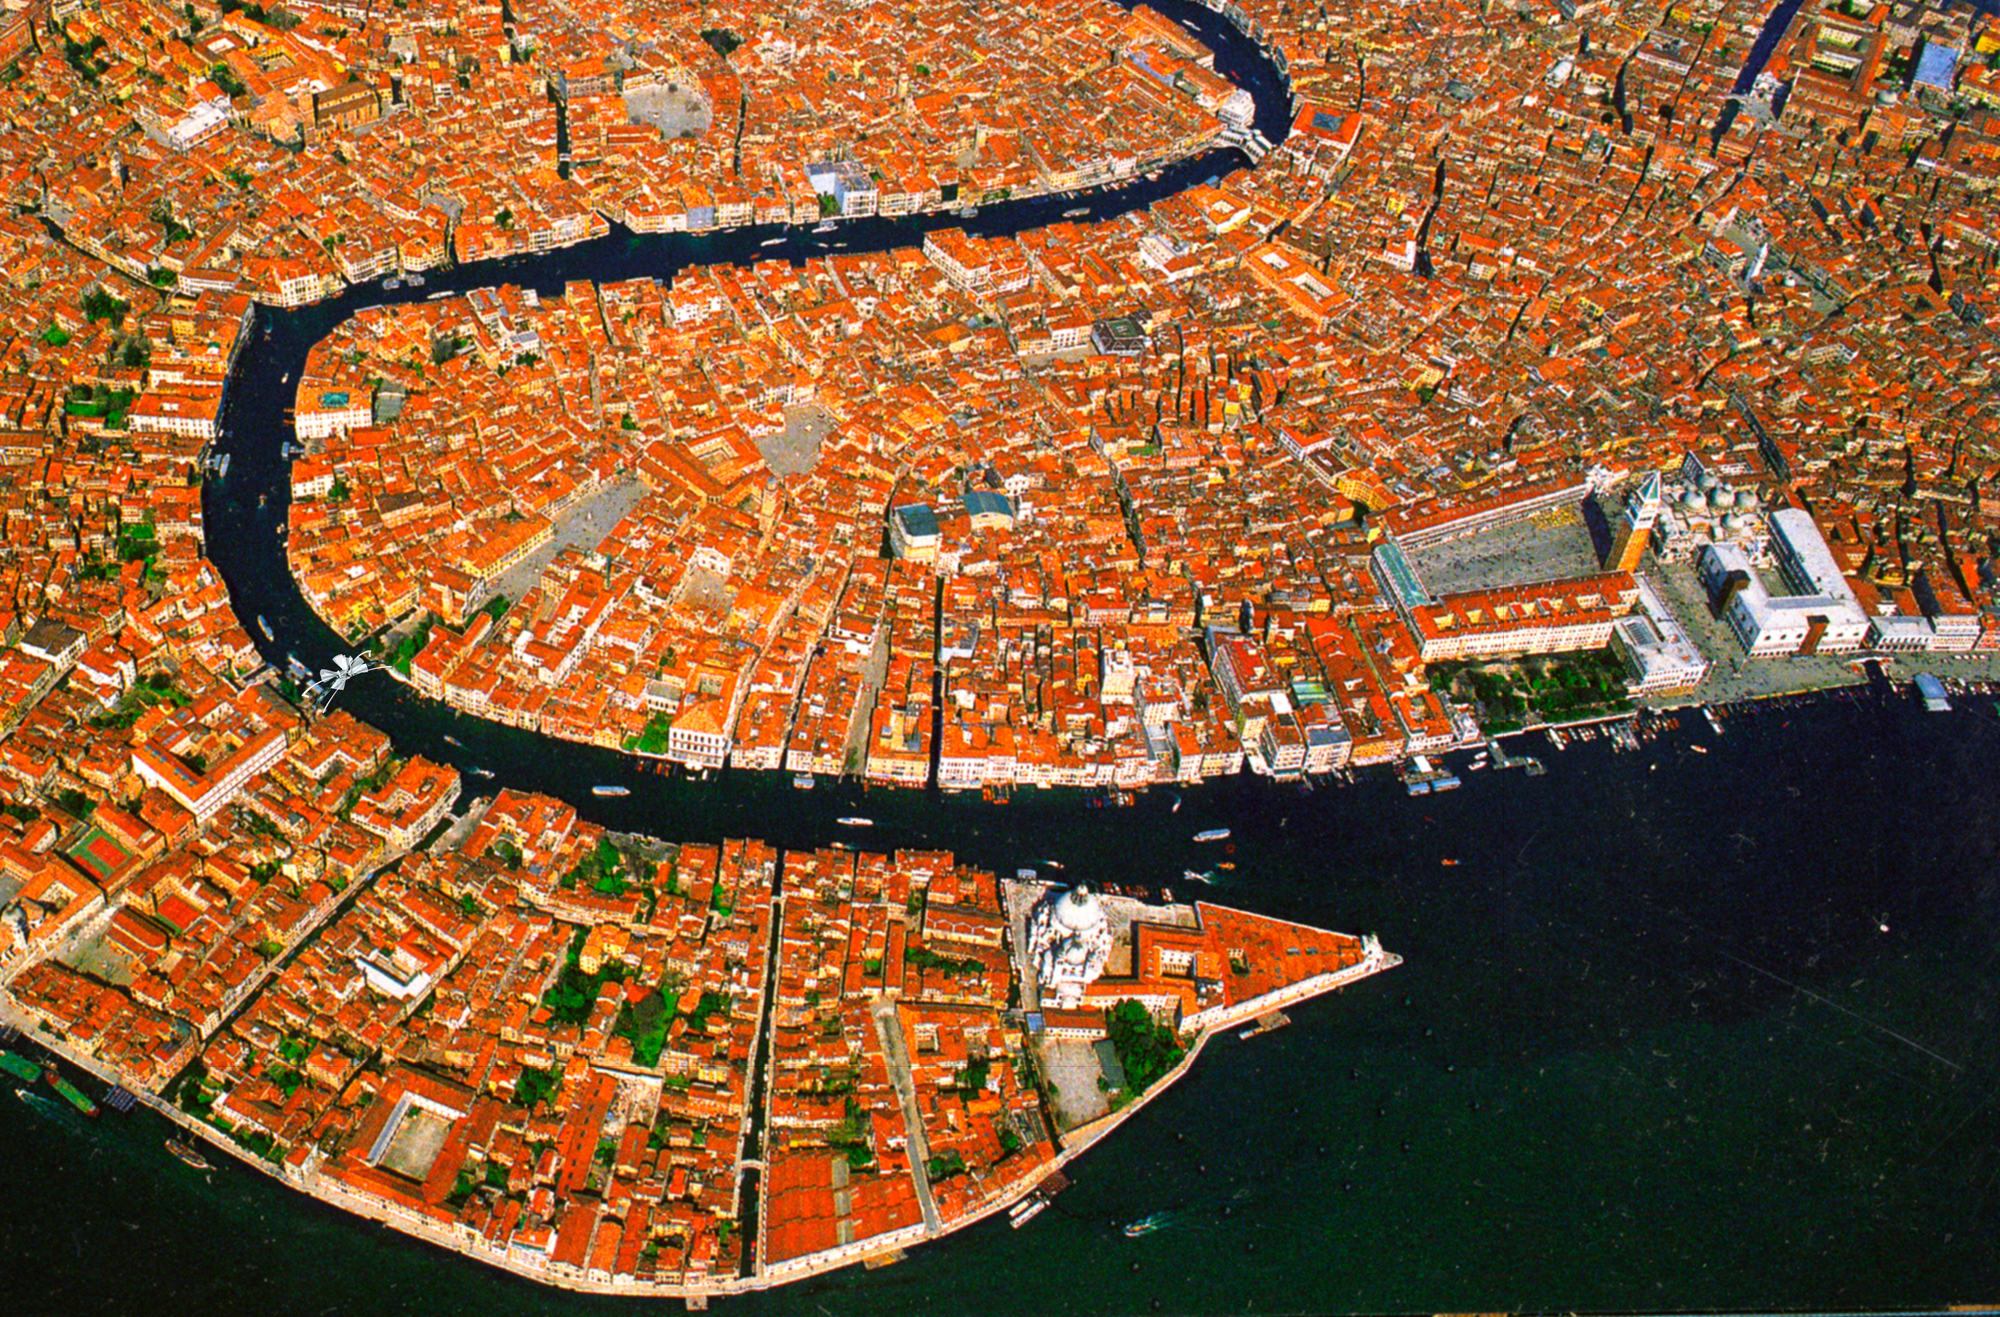 фото венеция с высоты птичьего полета